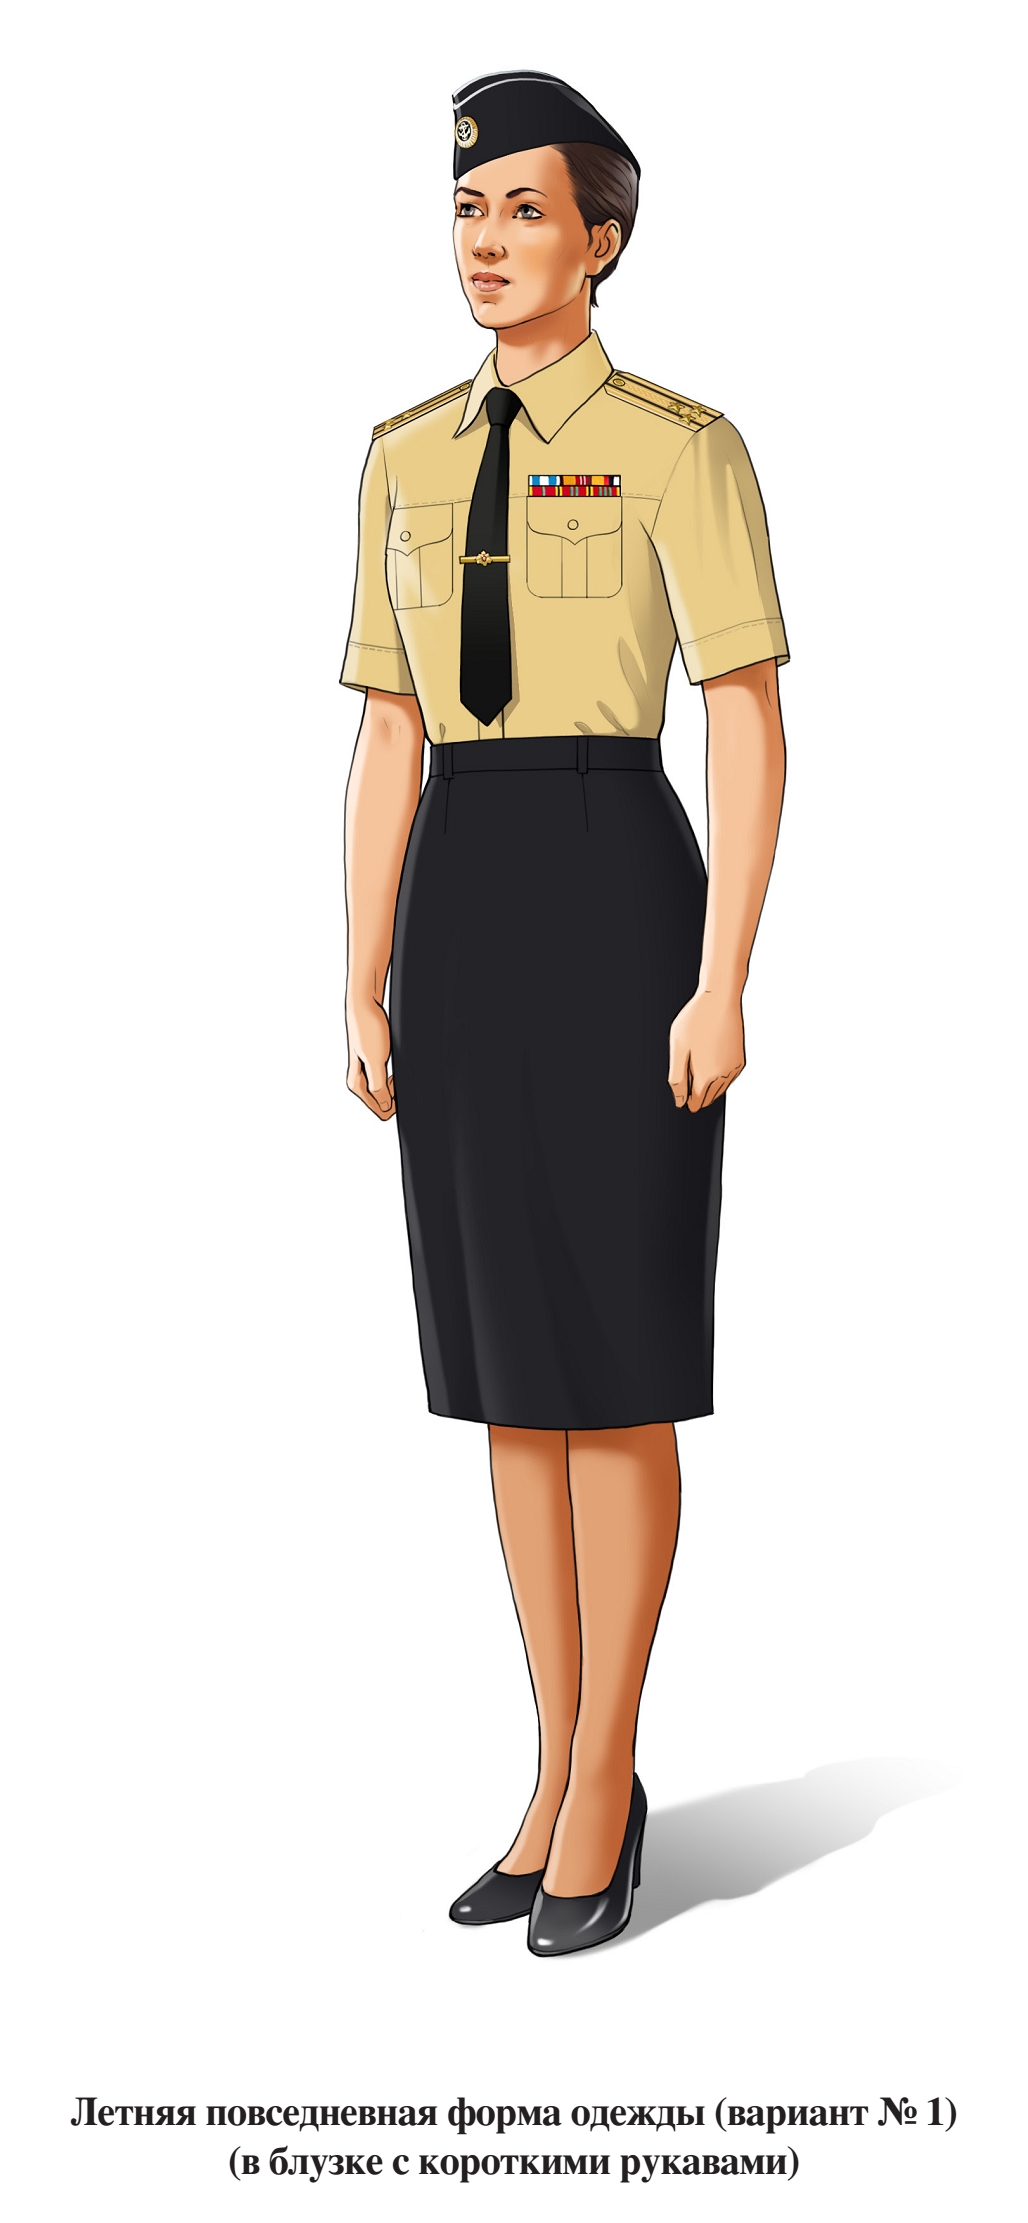 Летняя повседневная форма военнослужащих женского пола, в юбке и блузке с коротким рукавом